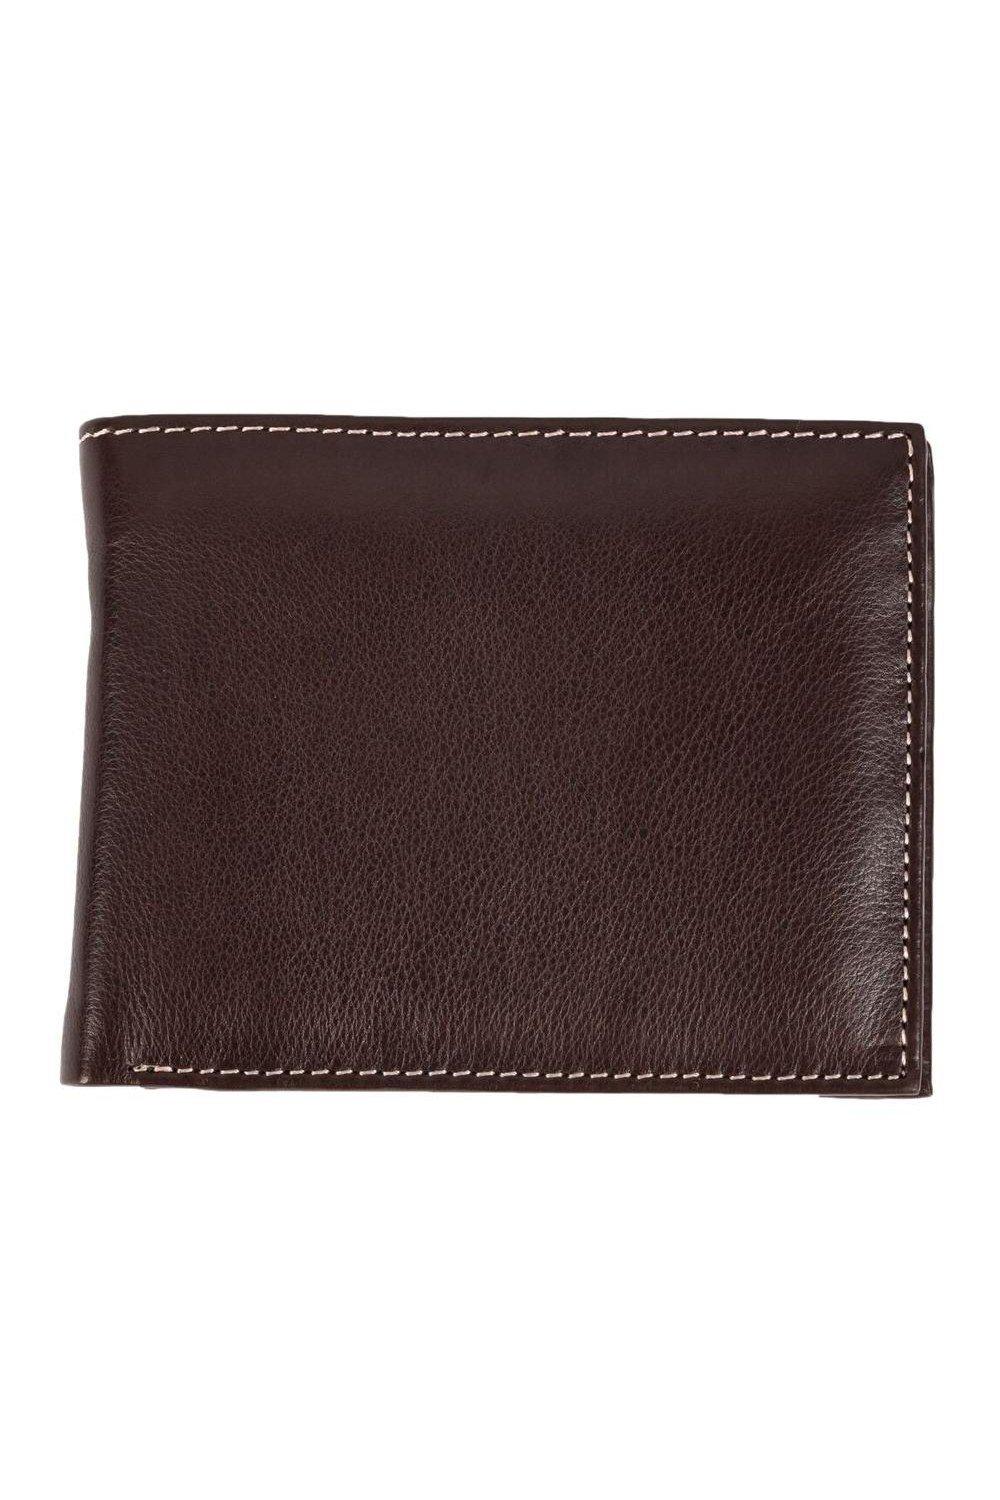 Кошелек Mark Trifold с карманом для монет Eastern Counties Leather, коричневый женский маленький кошелек из натуральной кожи короткий кошелек тройного сложения с отделением для карт и rfid защитой кошелек для монет 2022